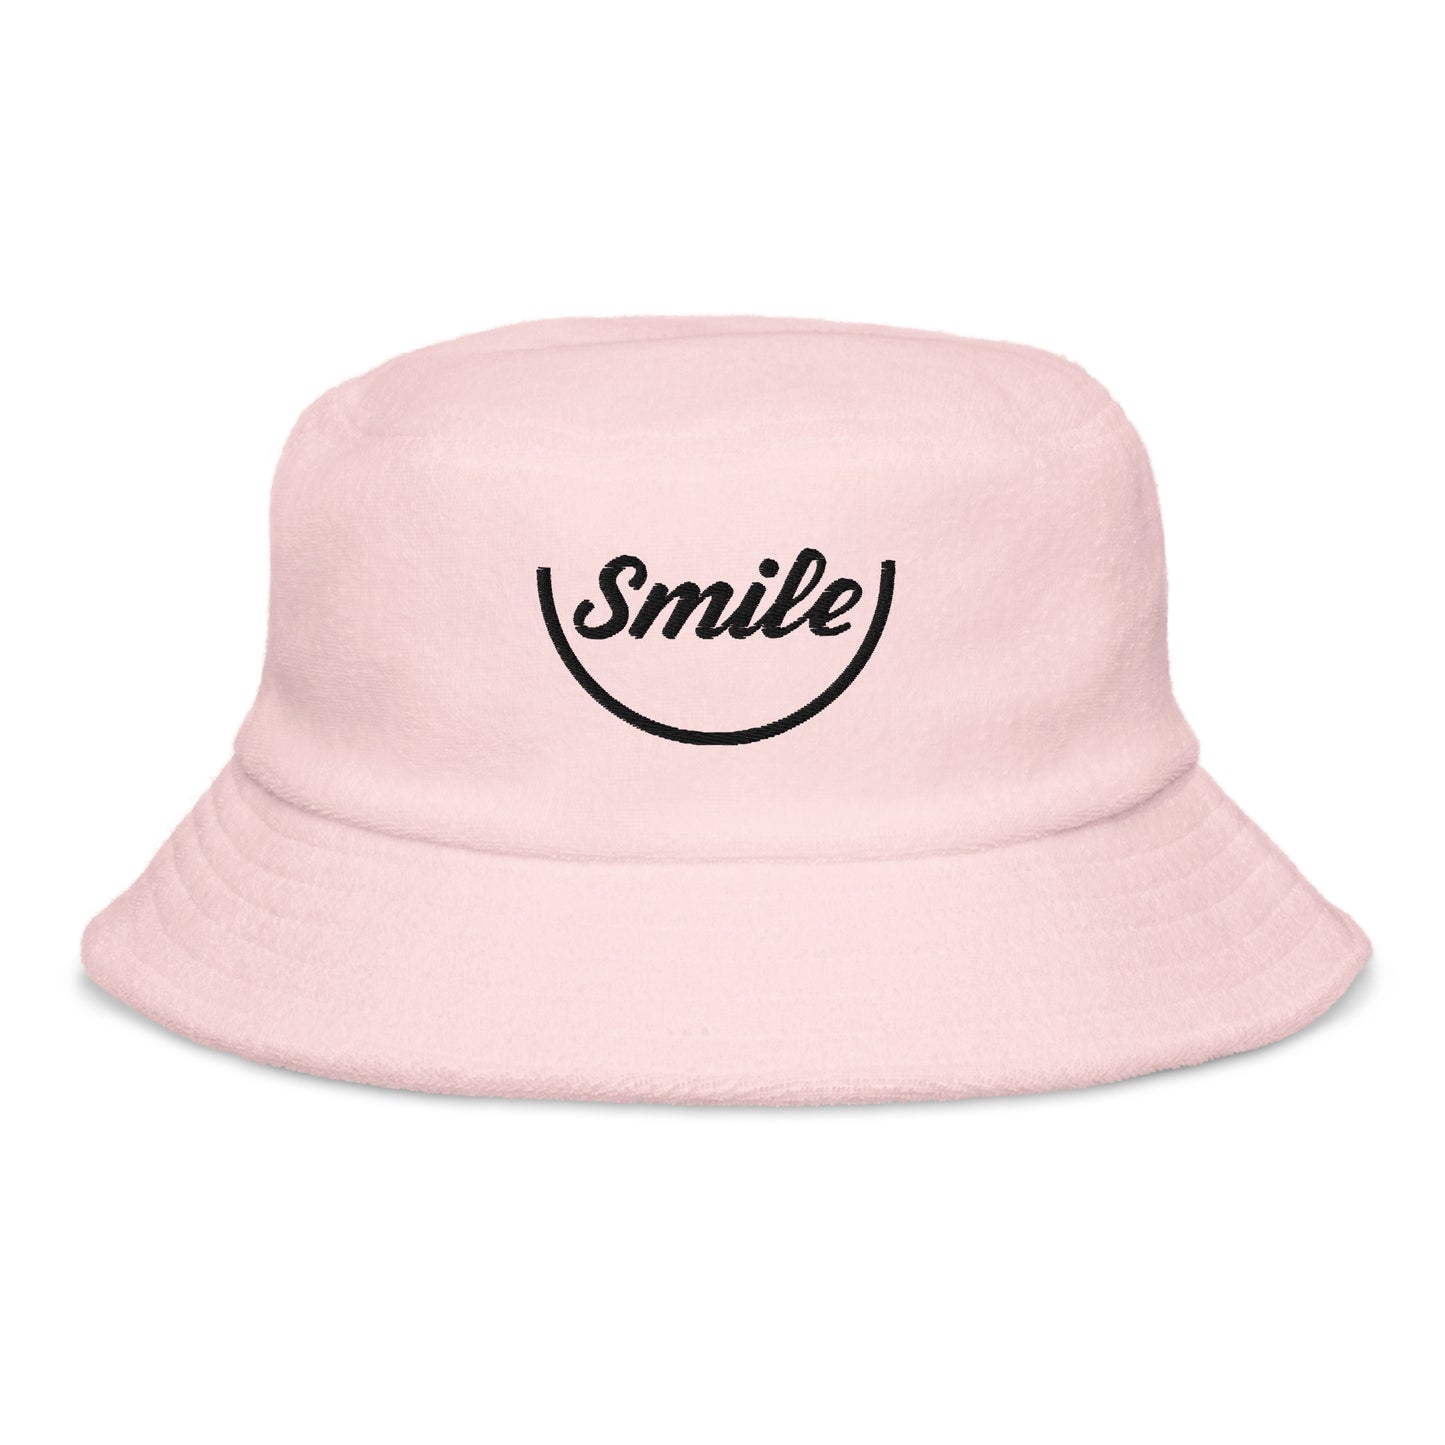 Double Smile bucket hat